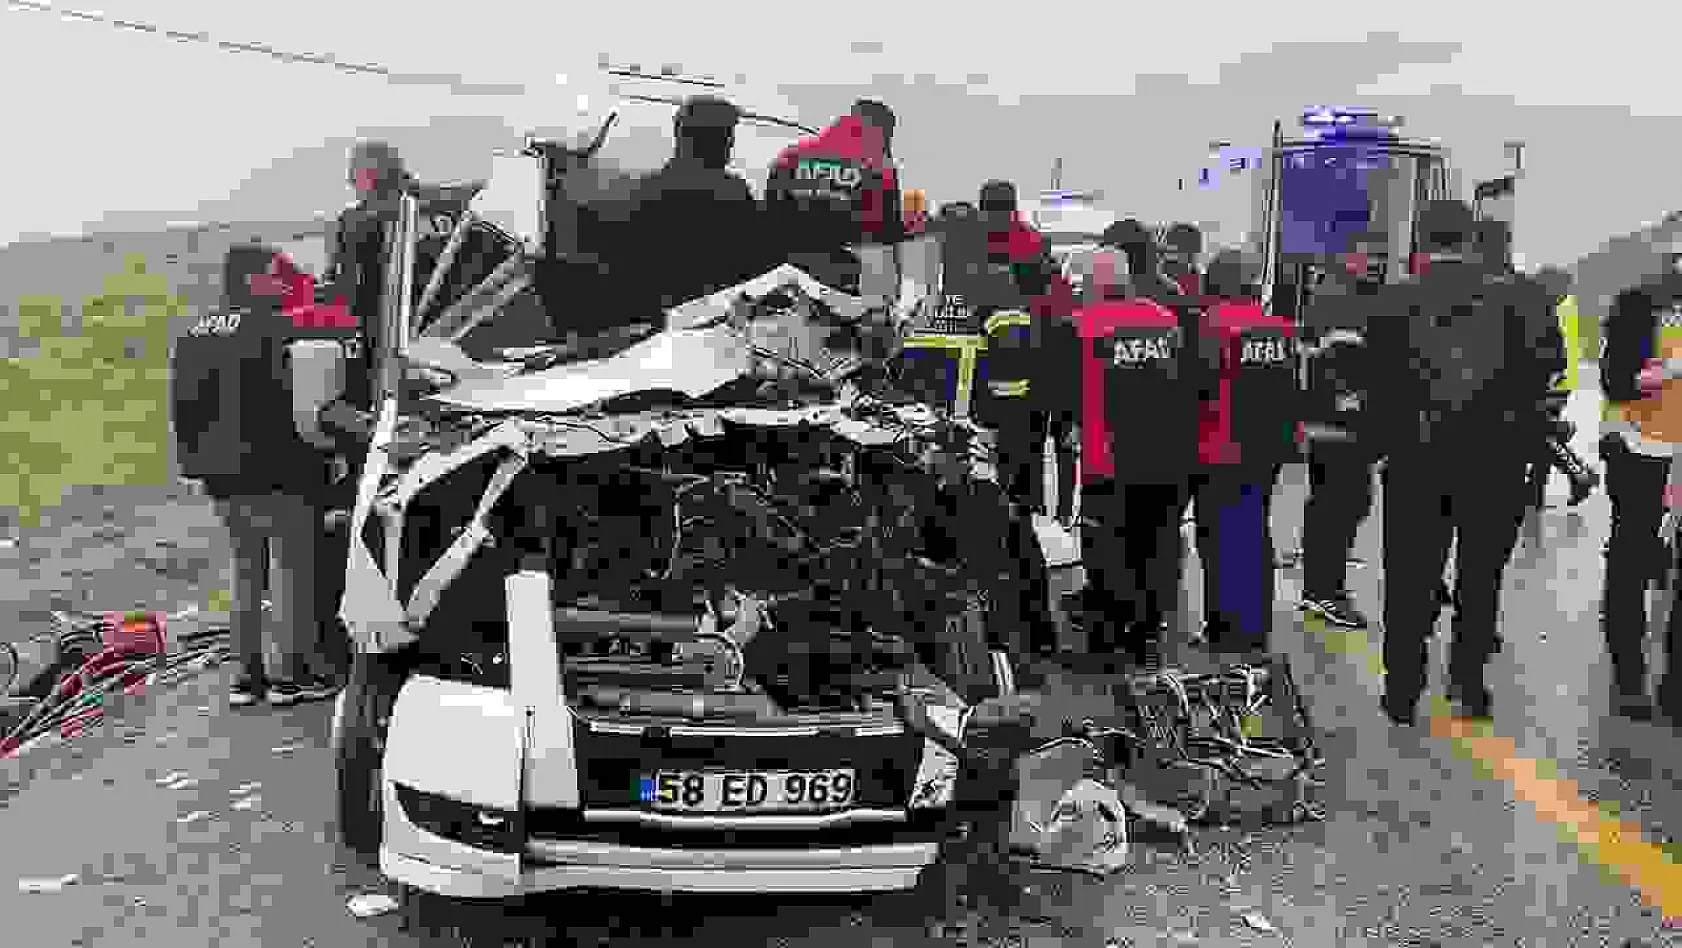 Sivas'ta servis aracı ile tır çarpıştı: 4 ölü, 1'i ağır 3 yaralı